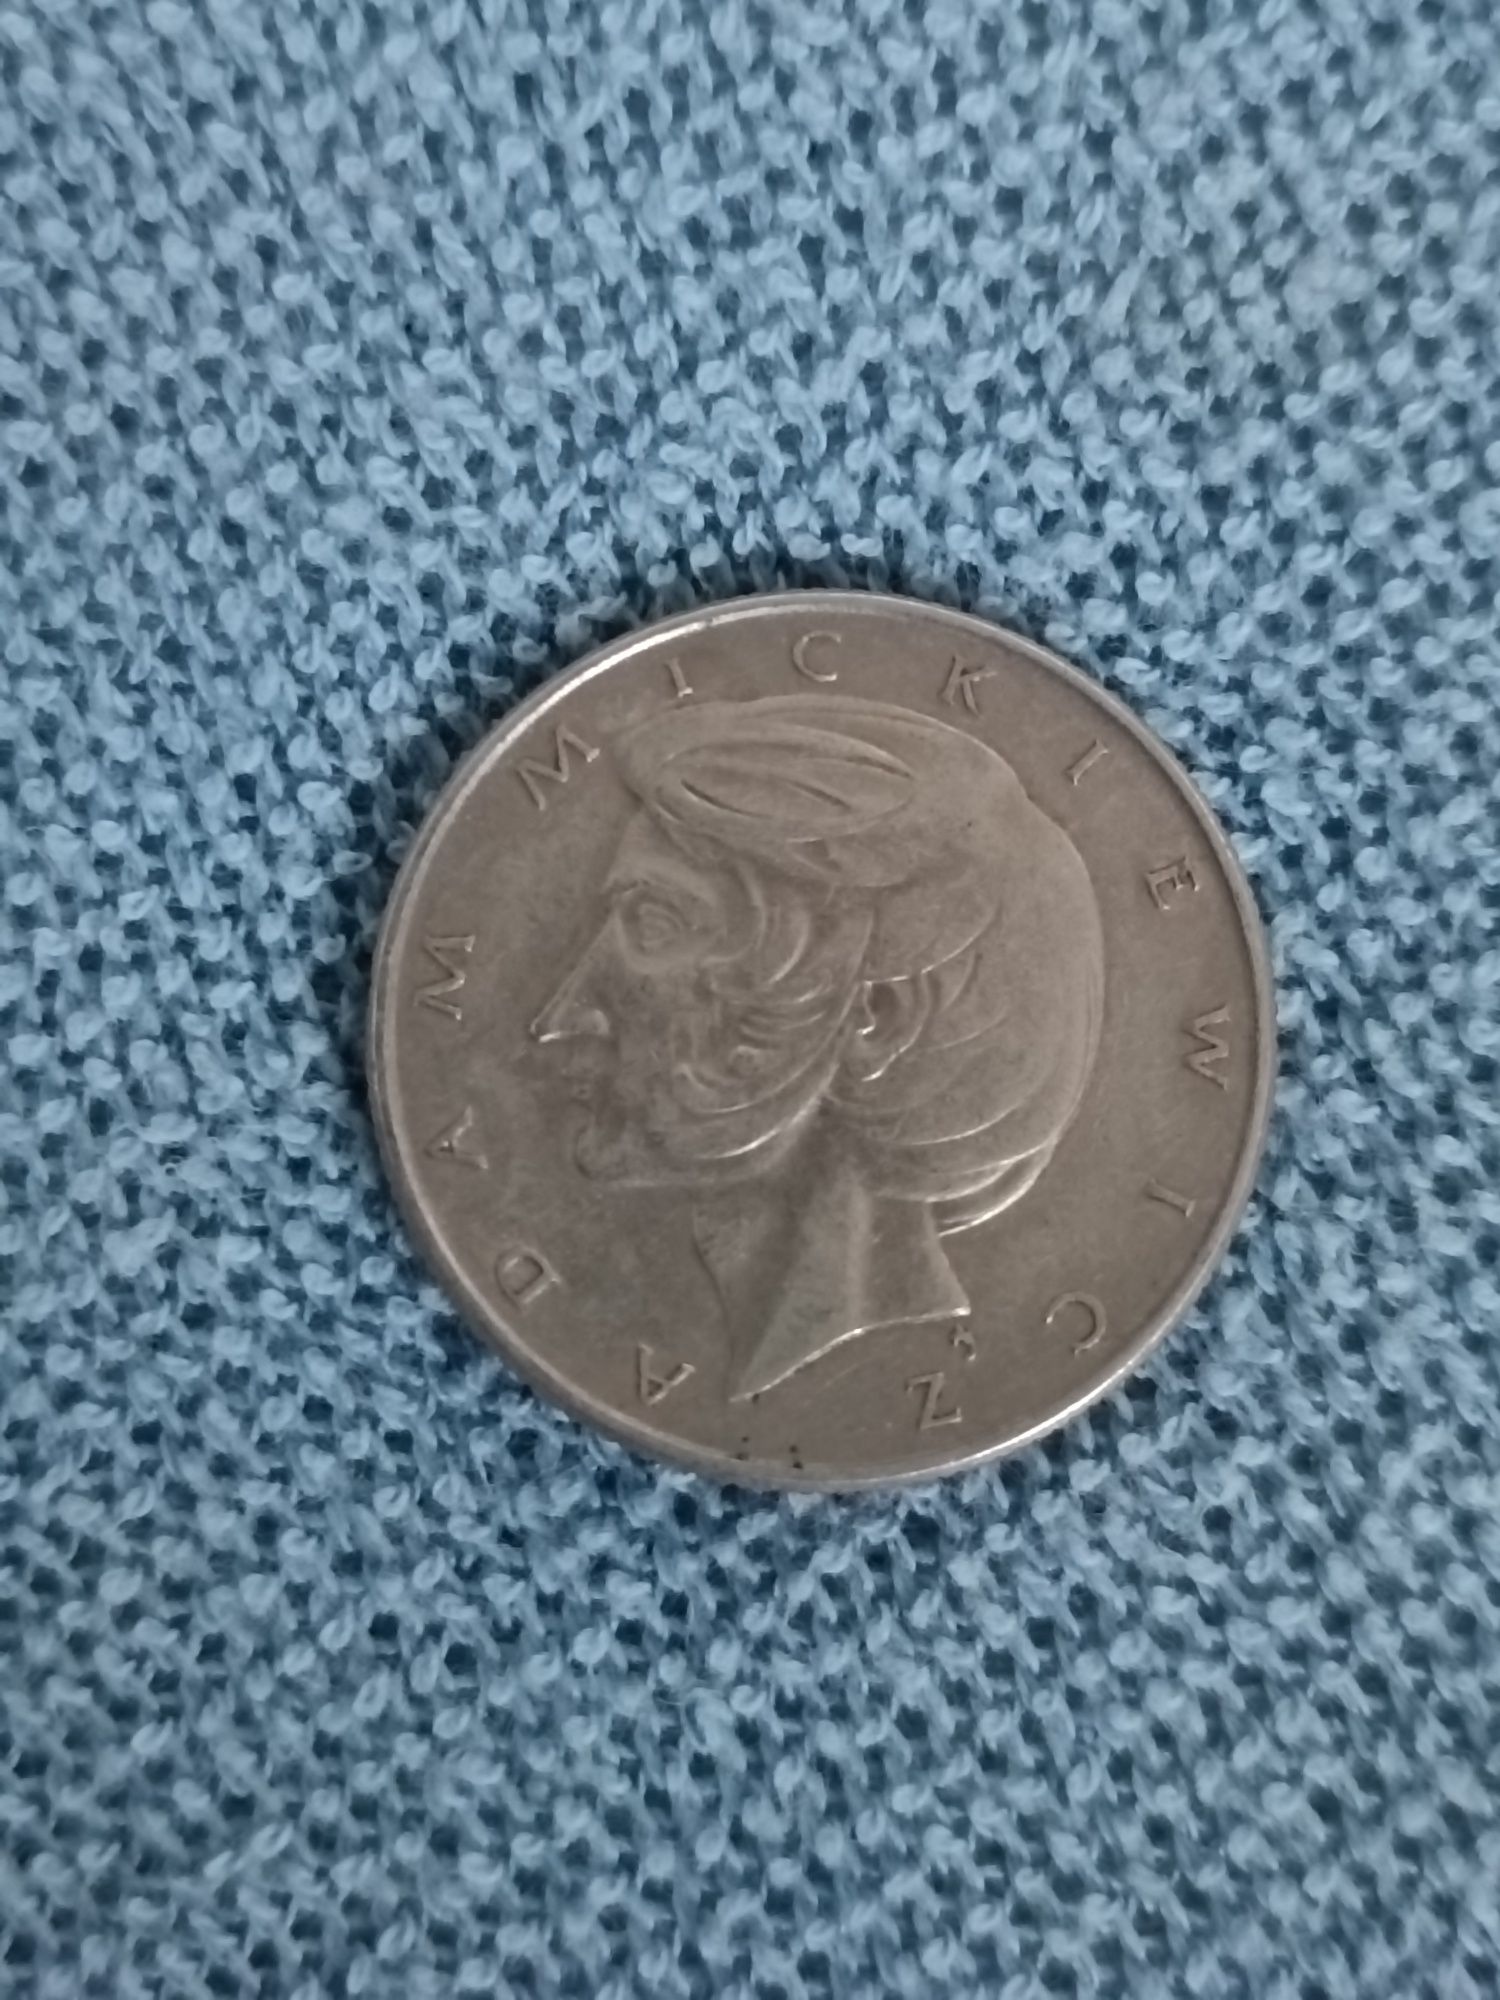 Adam Mickiewicz moneta 10 zł 1975 PRL